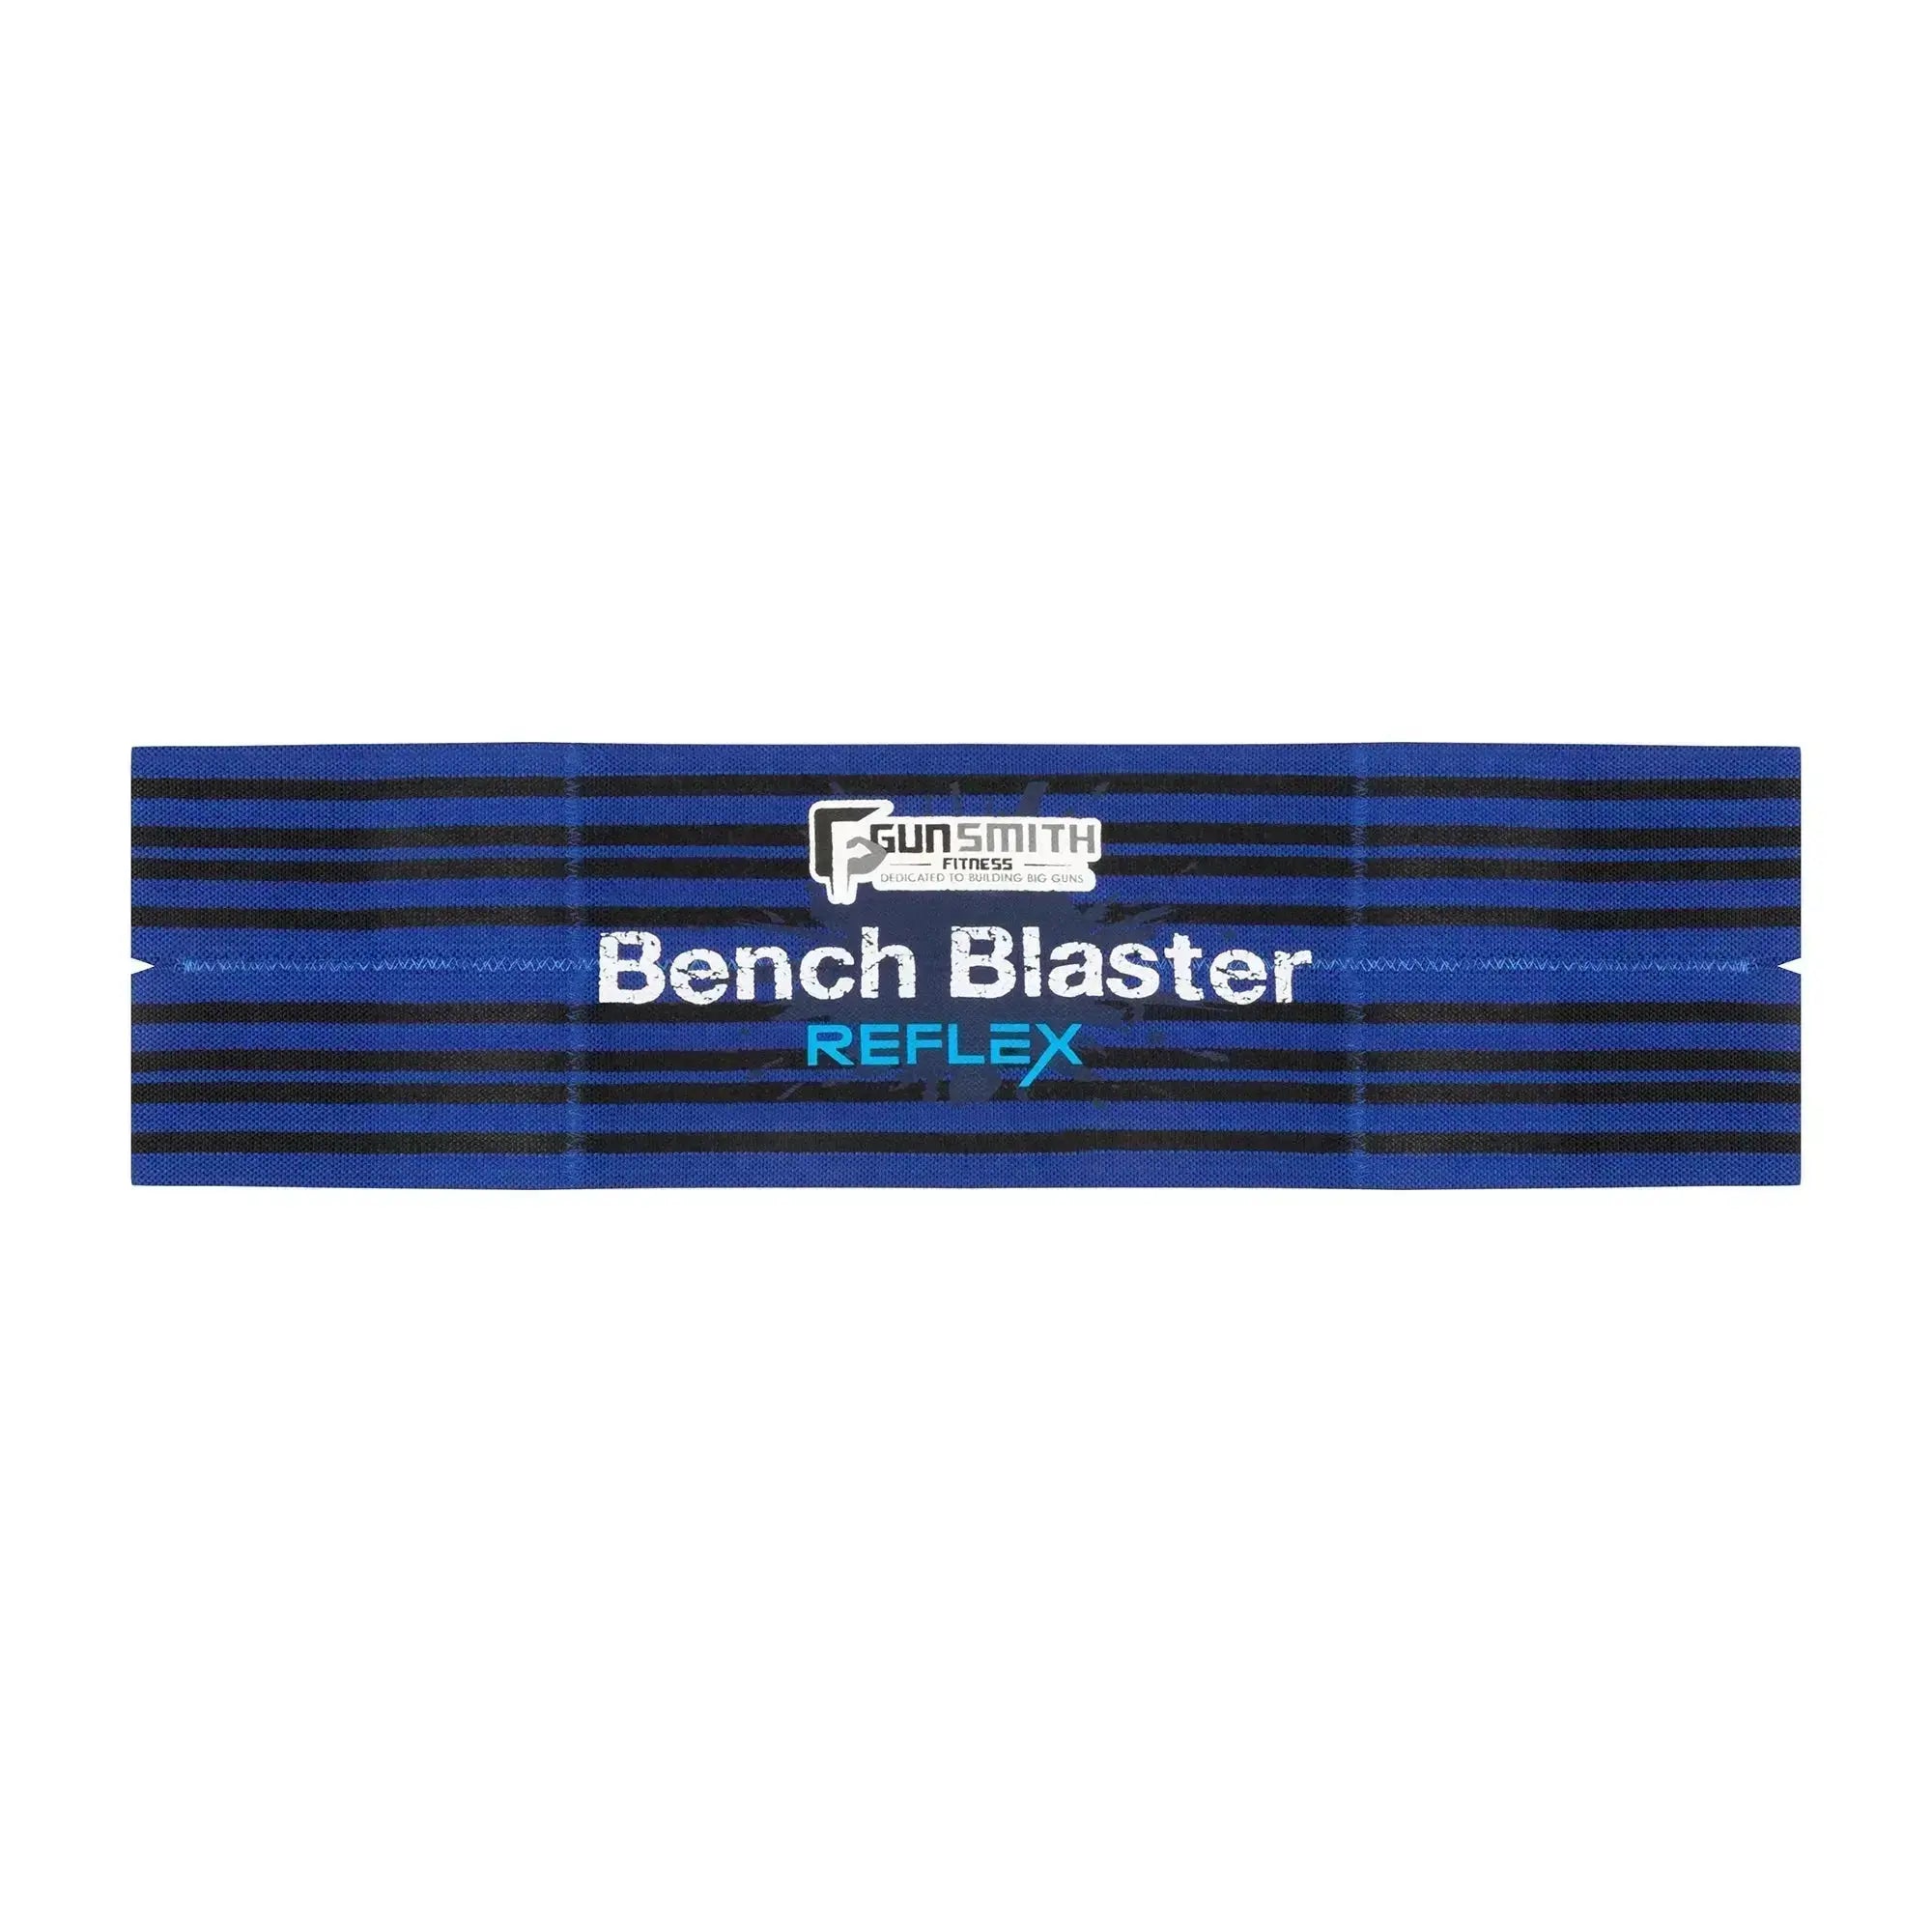 Bench Blaster Reflex  Max Your Bench Press Gains Now